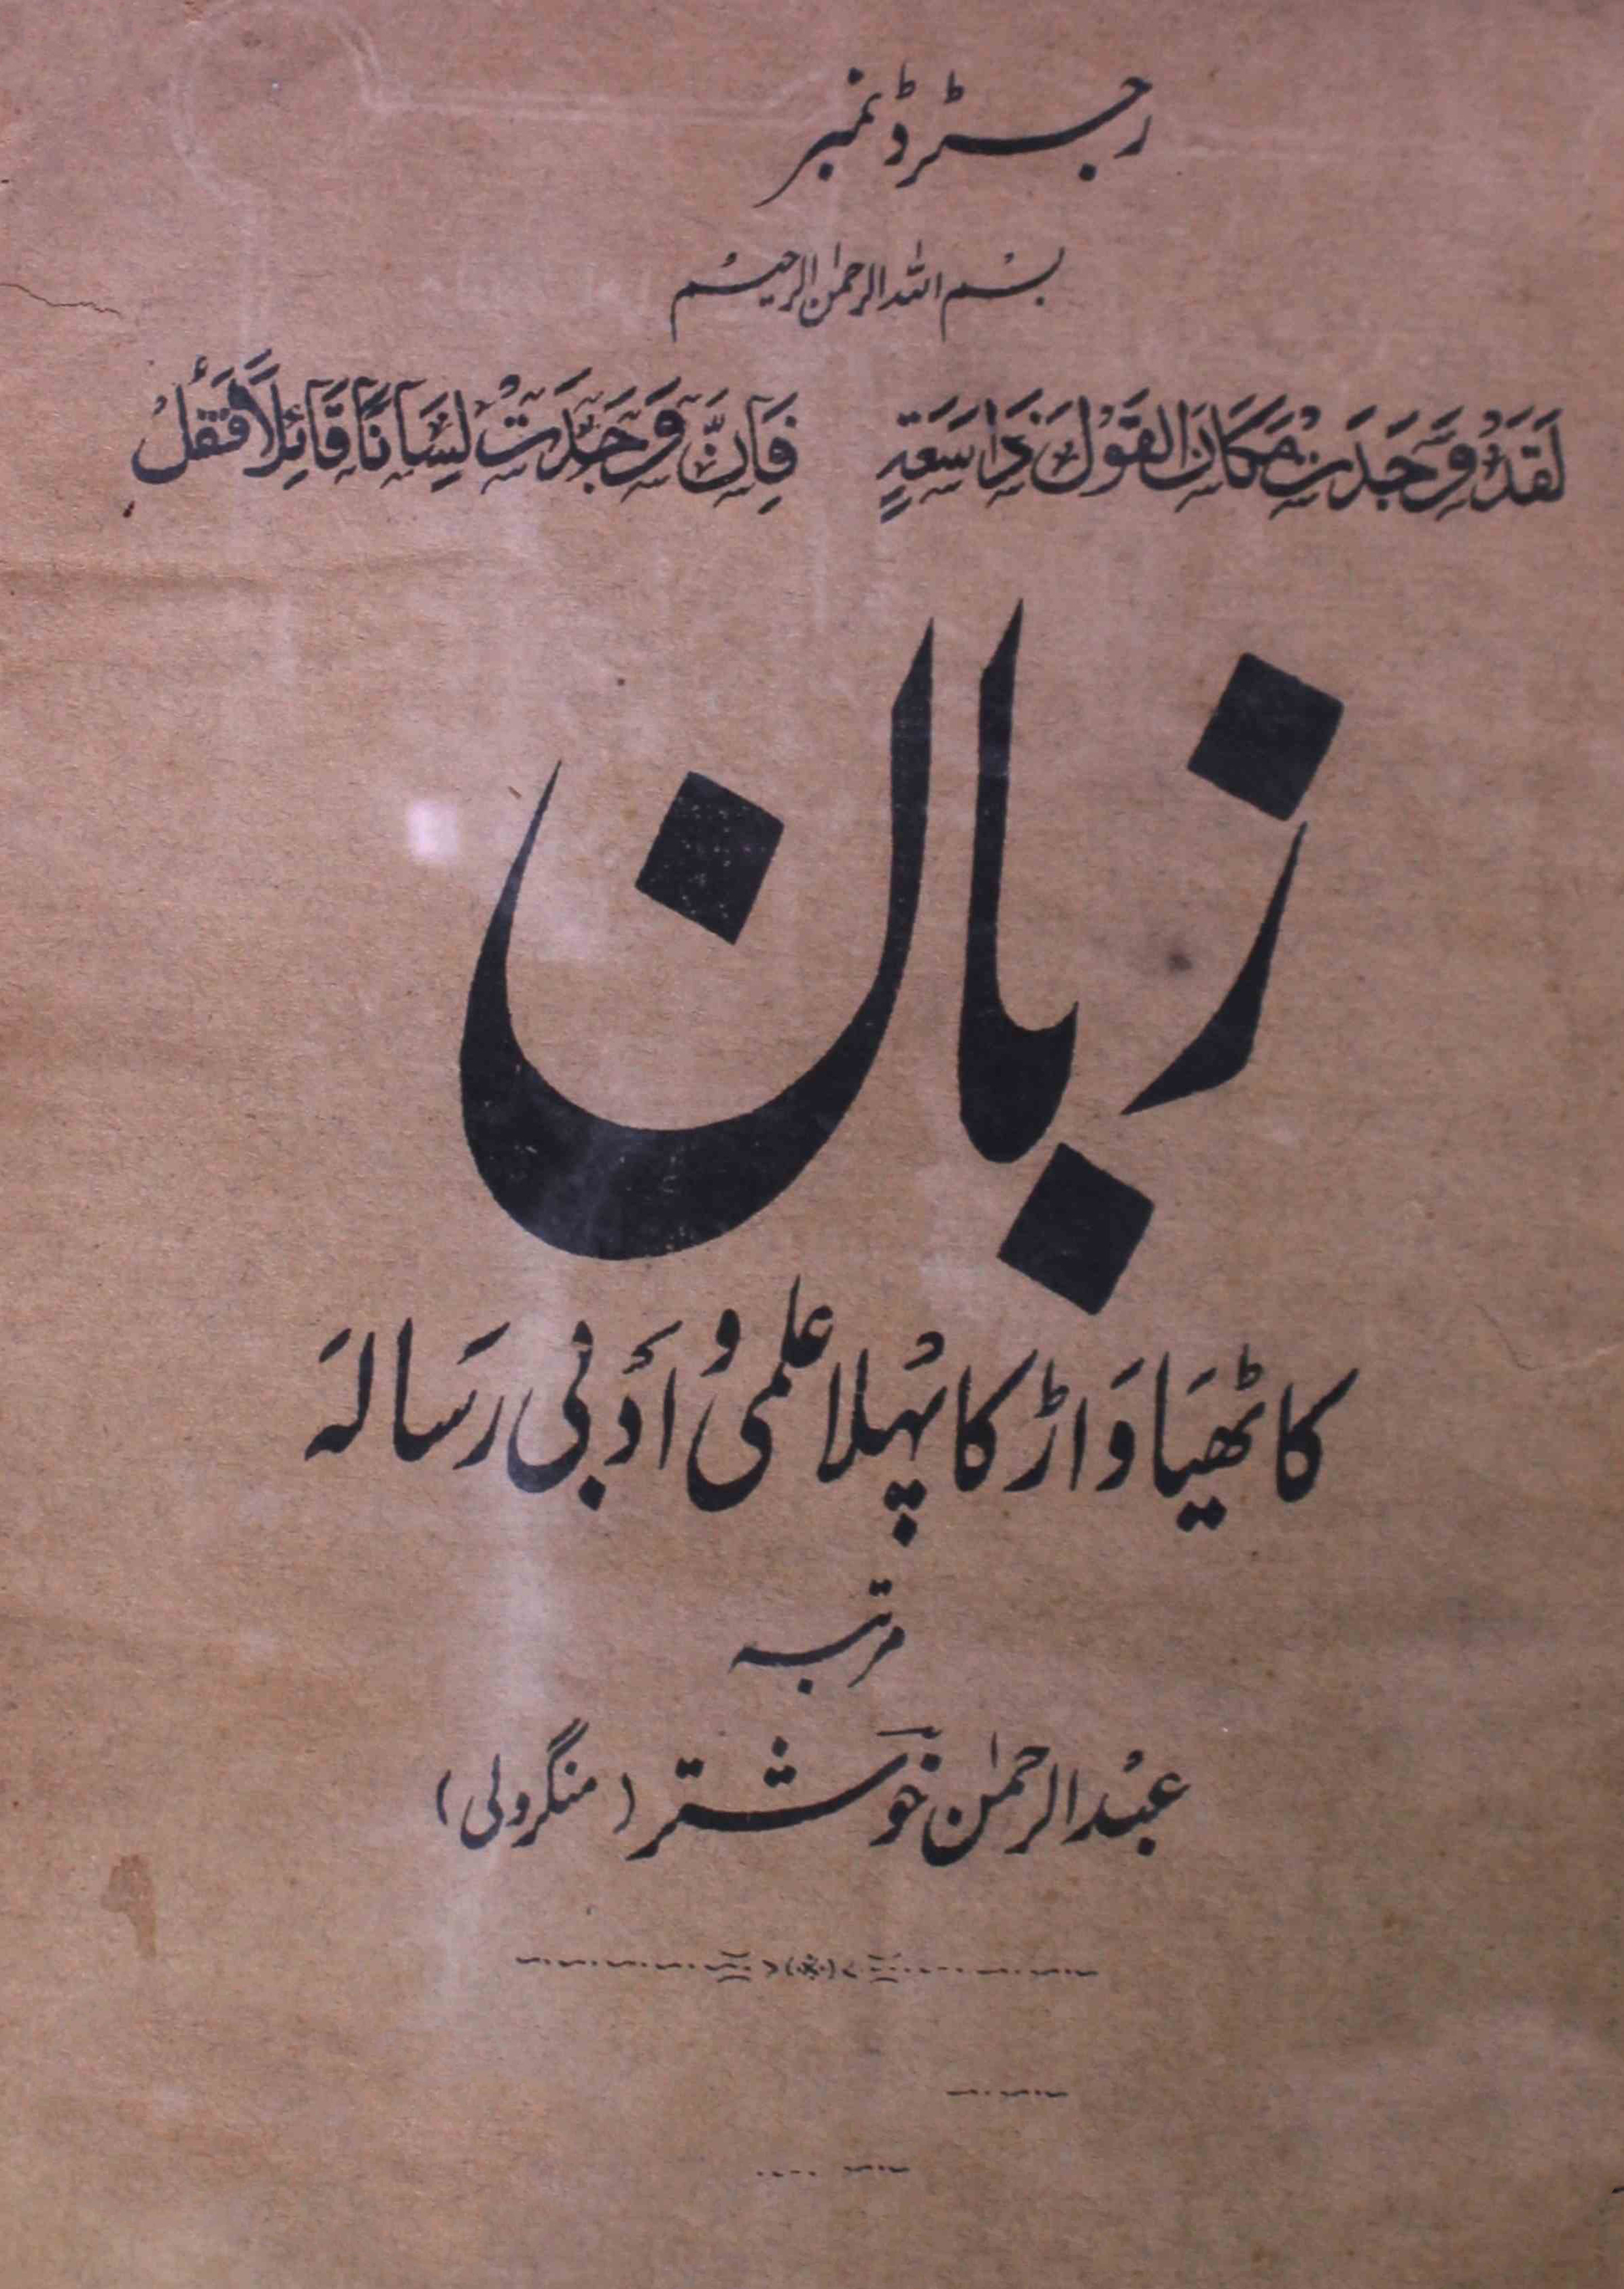 zaban-shumara-number-004-abdur-rahman-khushtar-mangroli-magazines